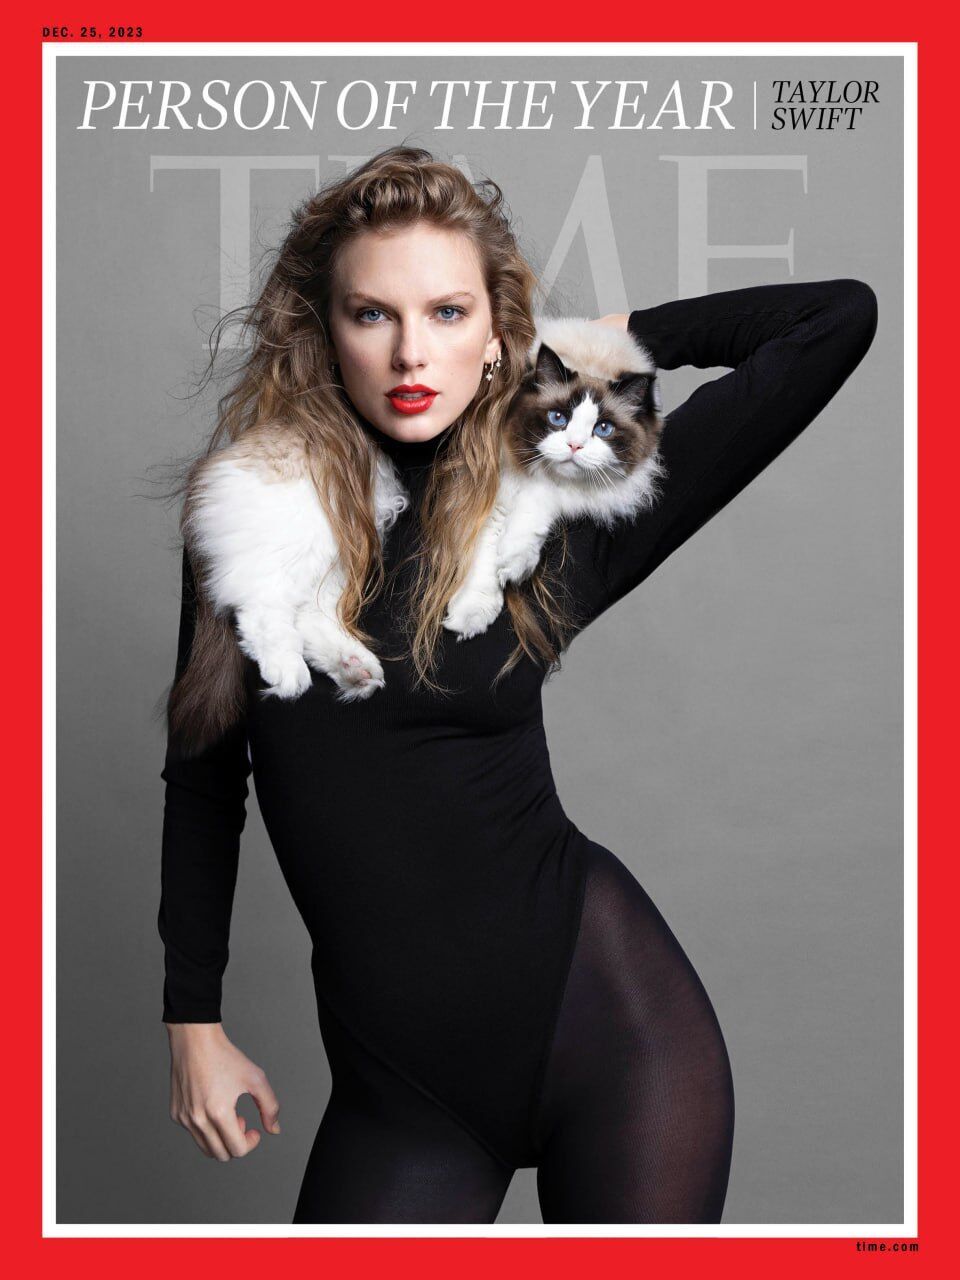 Тейлор Свифт стала человеком года по версии Time: конкурентами певицы были "Барби" и Путин